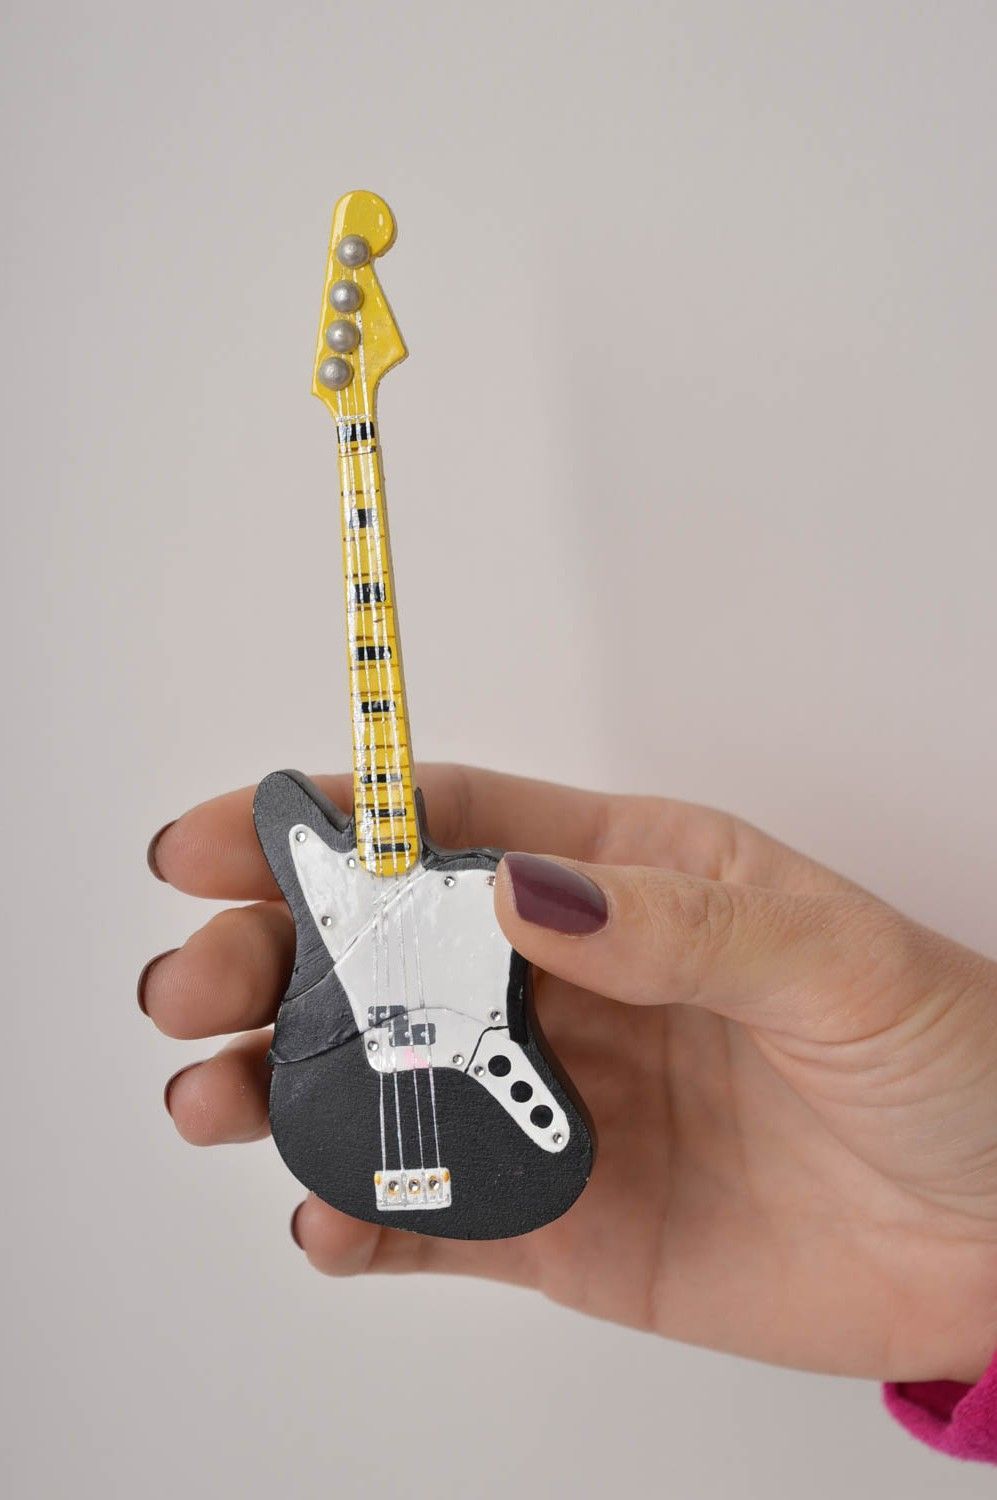 Флешка-гитара ручной работы оригинальная флешка из пластики красивая флешка фото 4